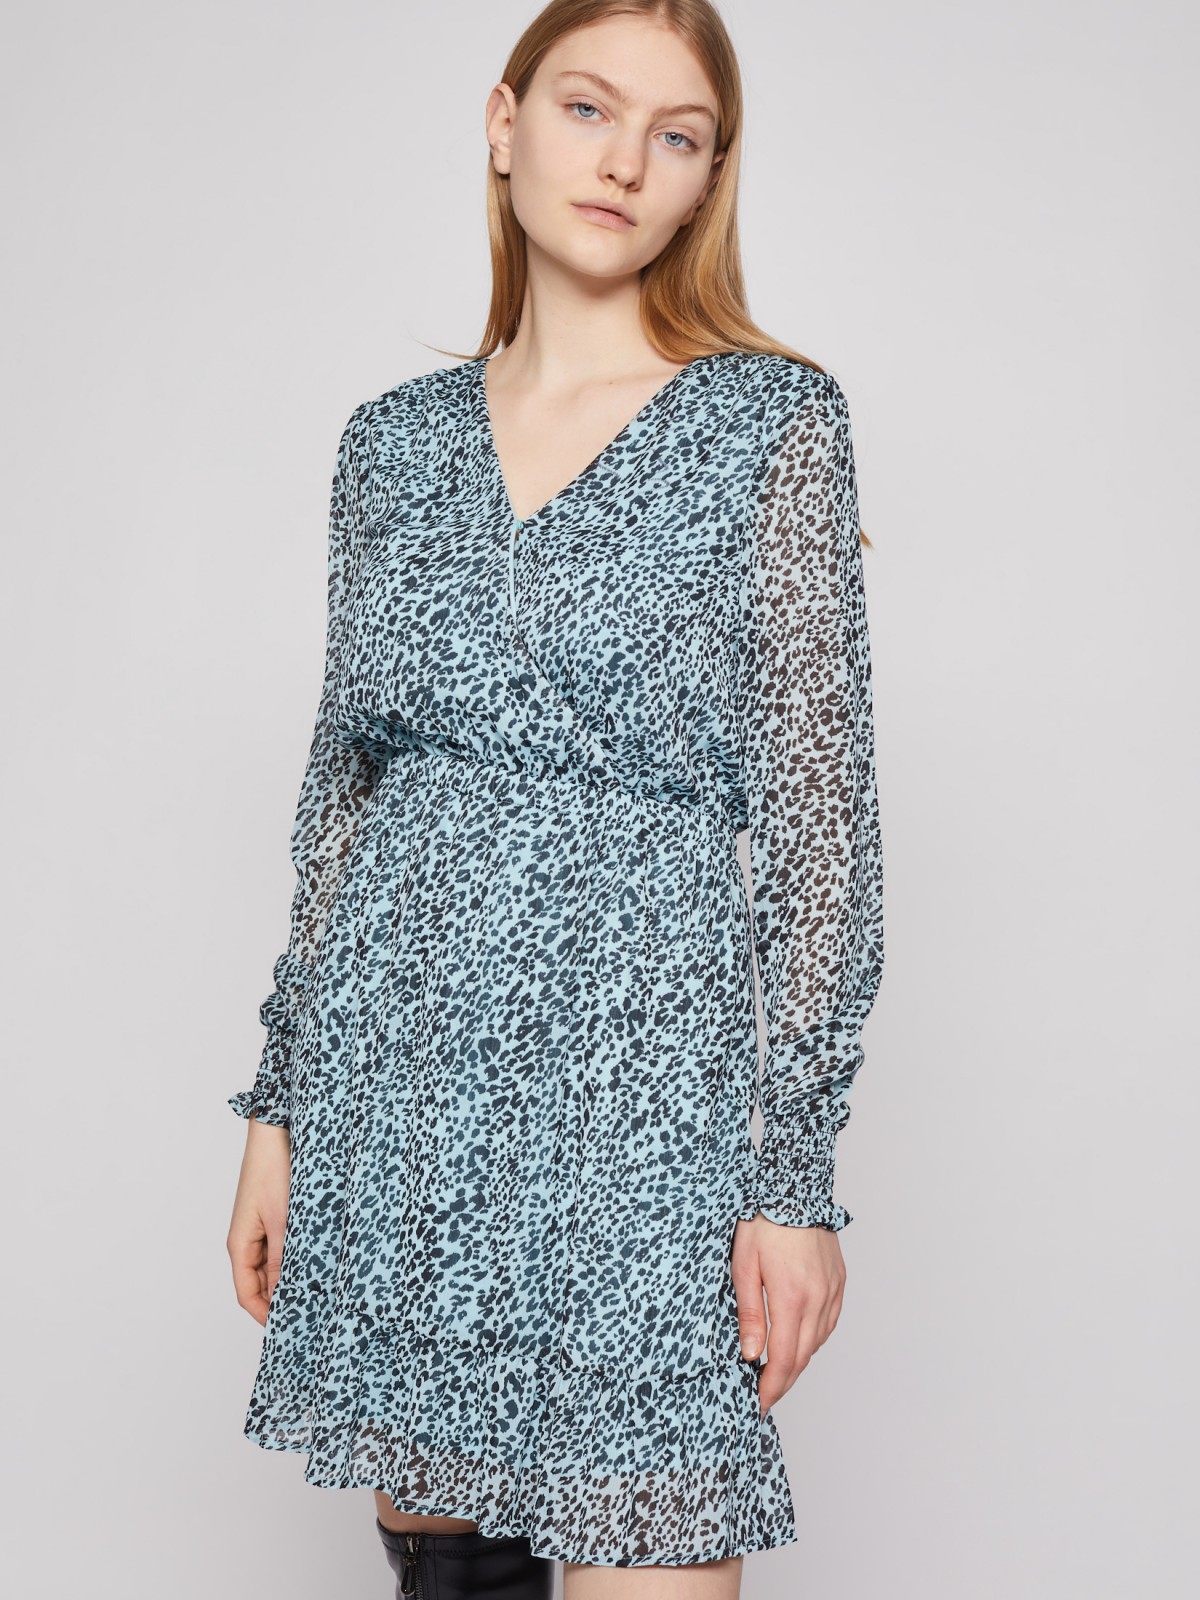 Шифоновое платье с леопардовым принтом zolla 02213824Y183, цвет мятный, размер XS - фото 3